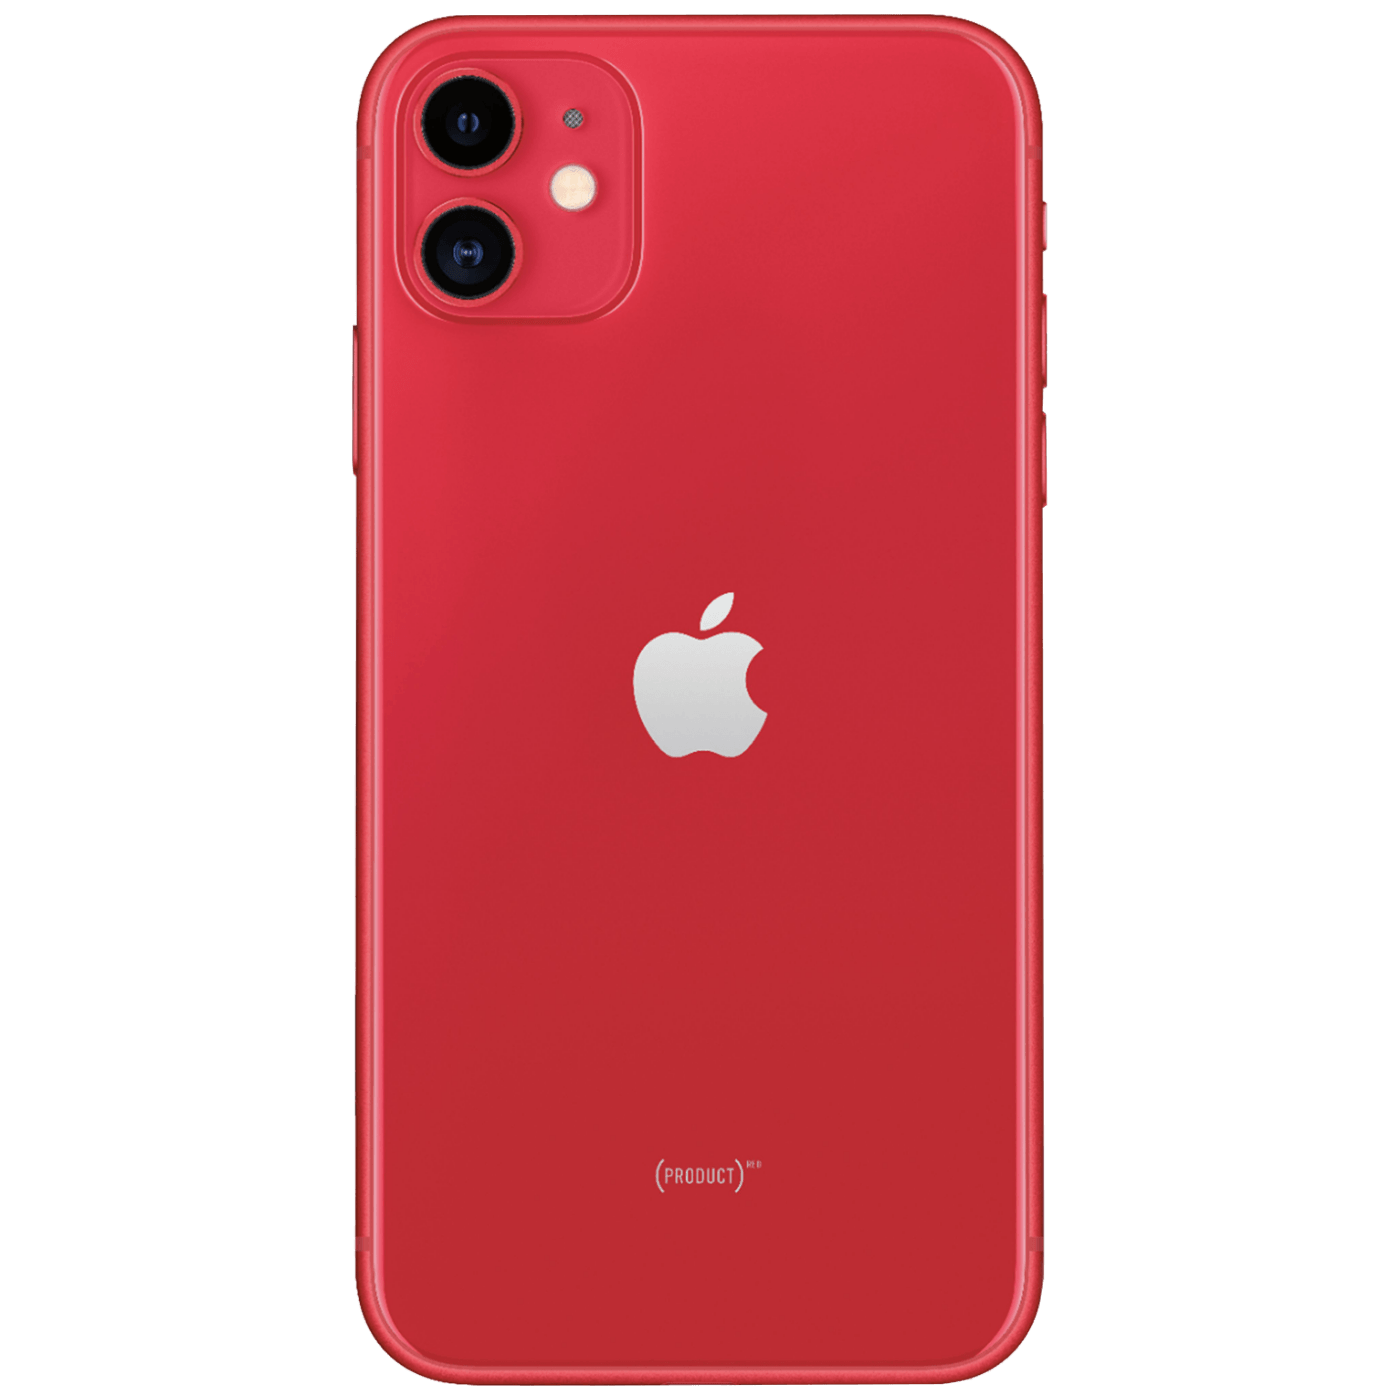 Красный телефон айфон. Apple iphone 11 128gb (product)Red. Apple iphone 11 64gb Red. Apple iphone 11 64gb (product)Red. Apple iphone 11 128 ГБ красный.